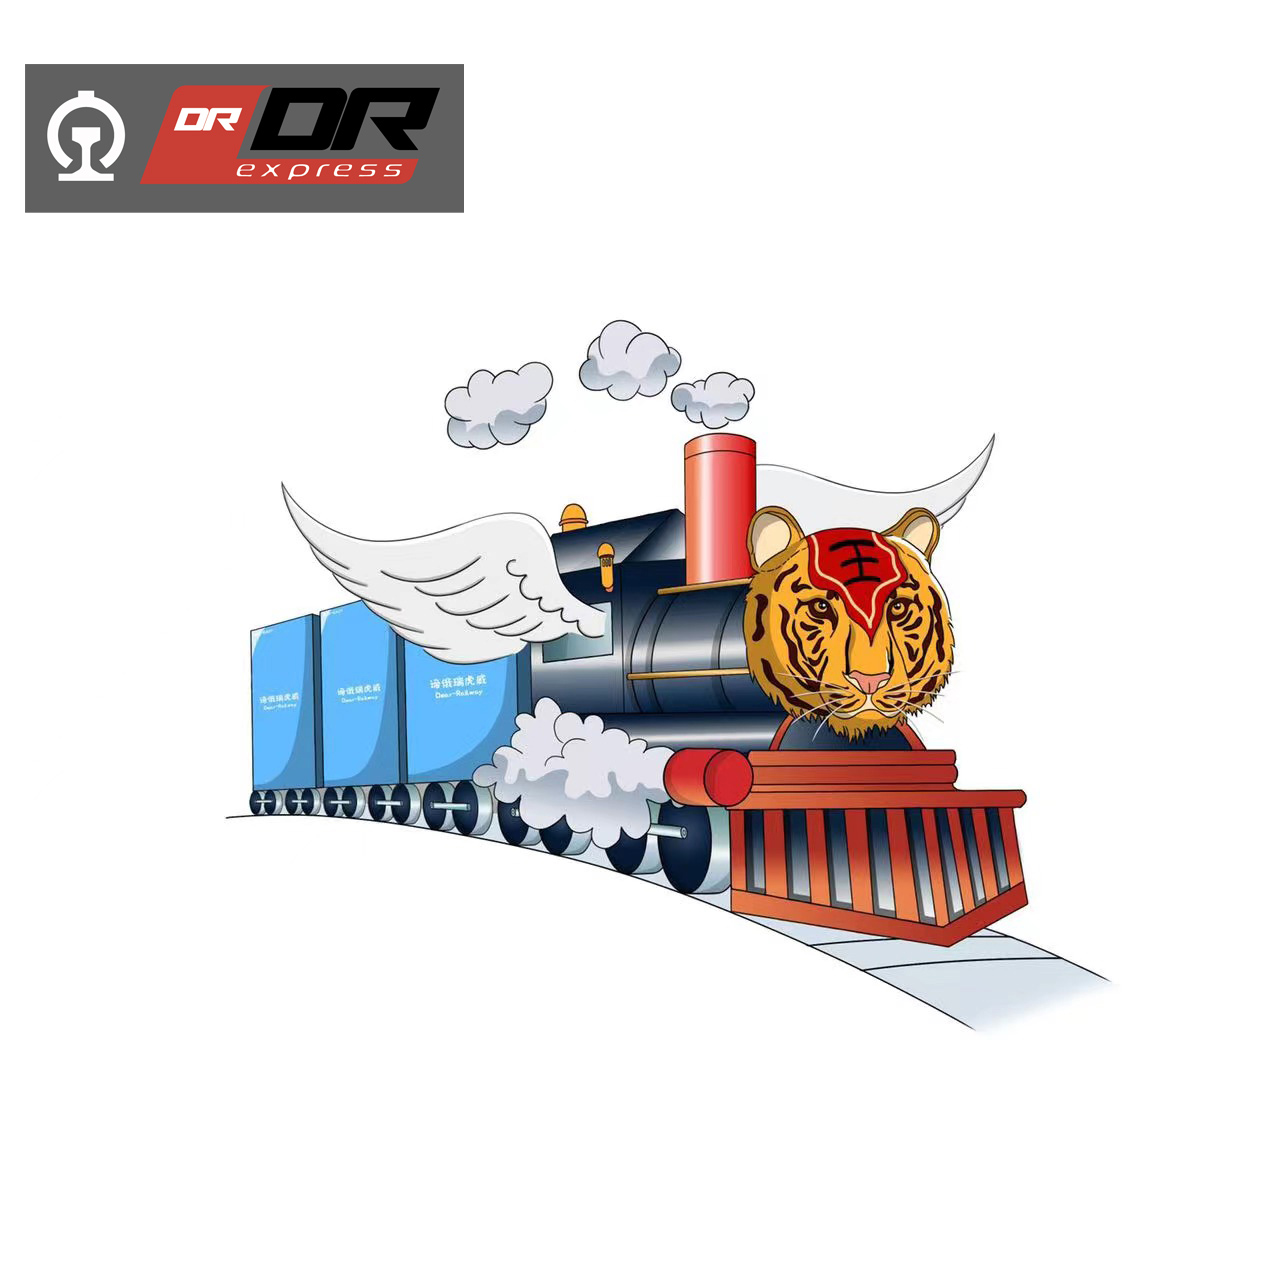 النقل بالسكك الحديدية الدولية - الأقمشة الصناعية